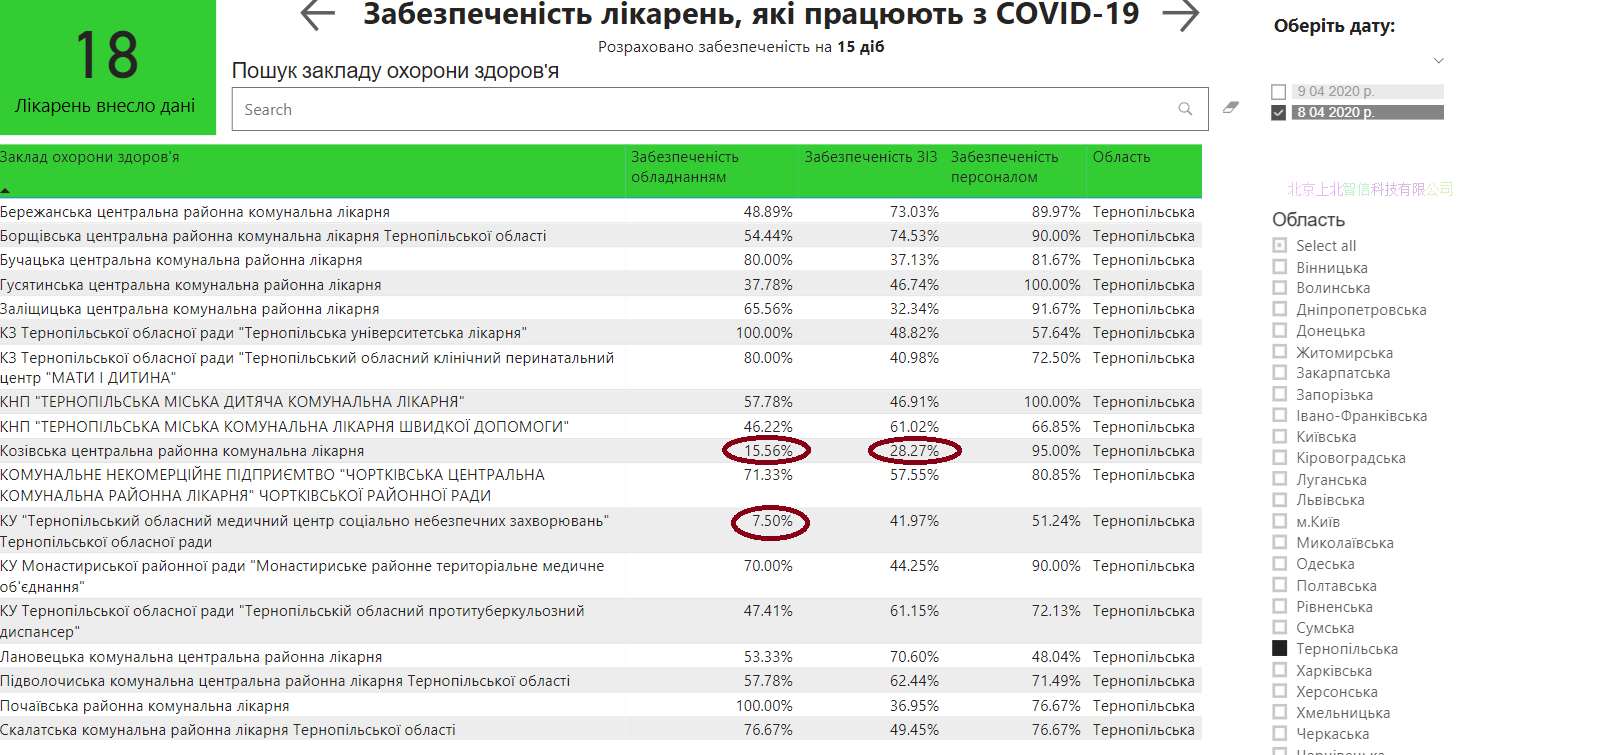 Кабмин раскрыл готовность больниц к COVID-19. "Средняя температура по стране" - 71%